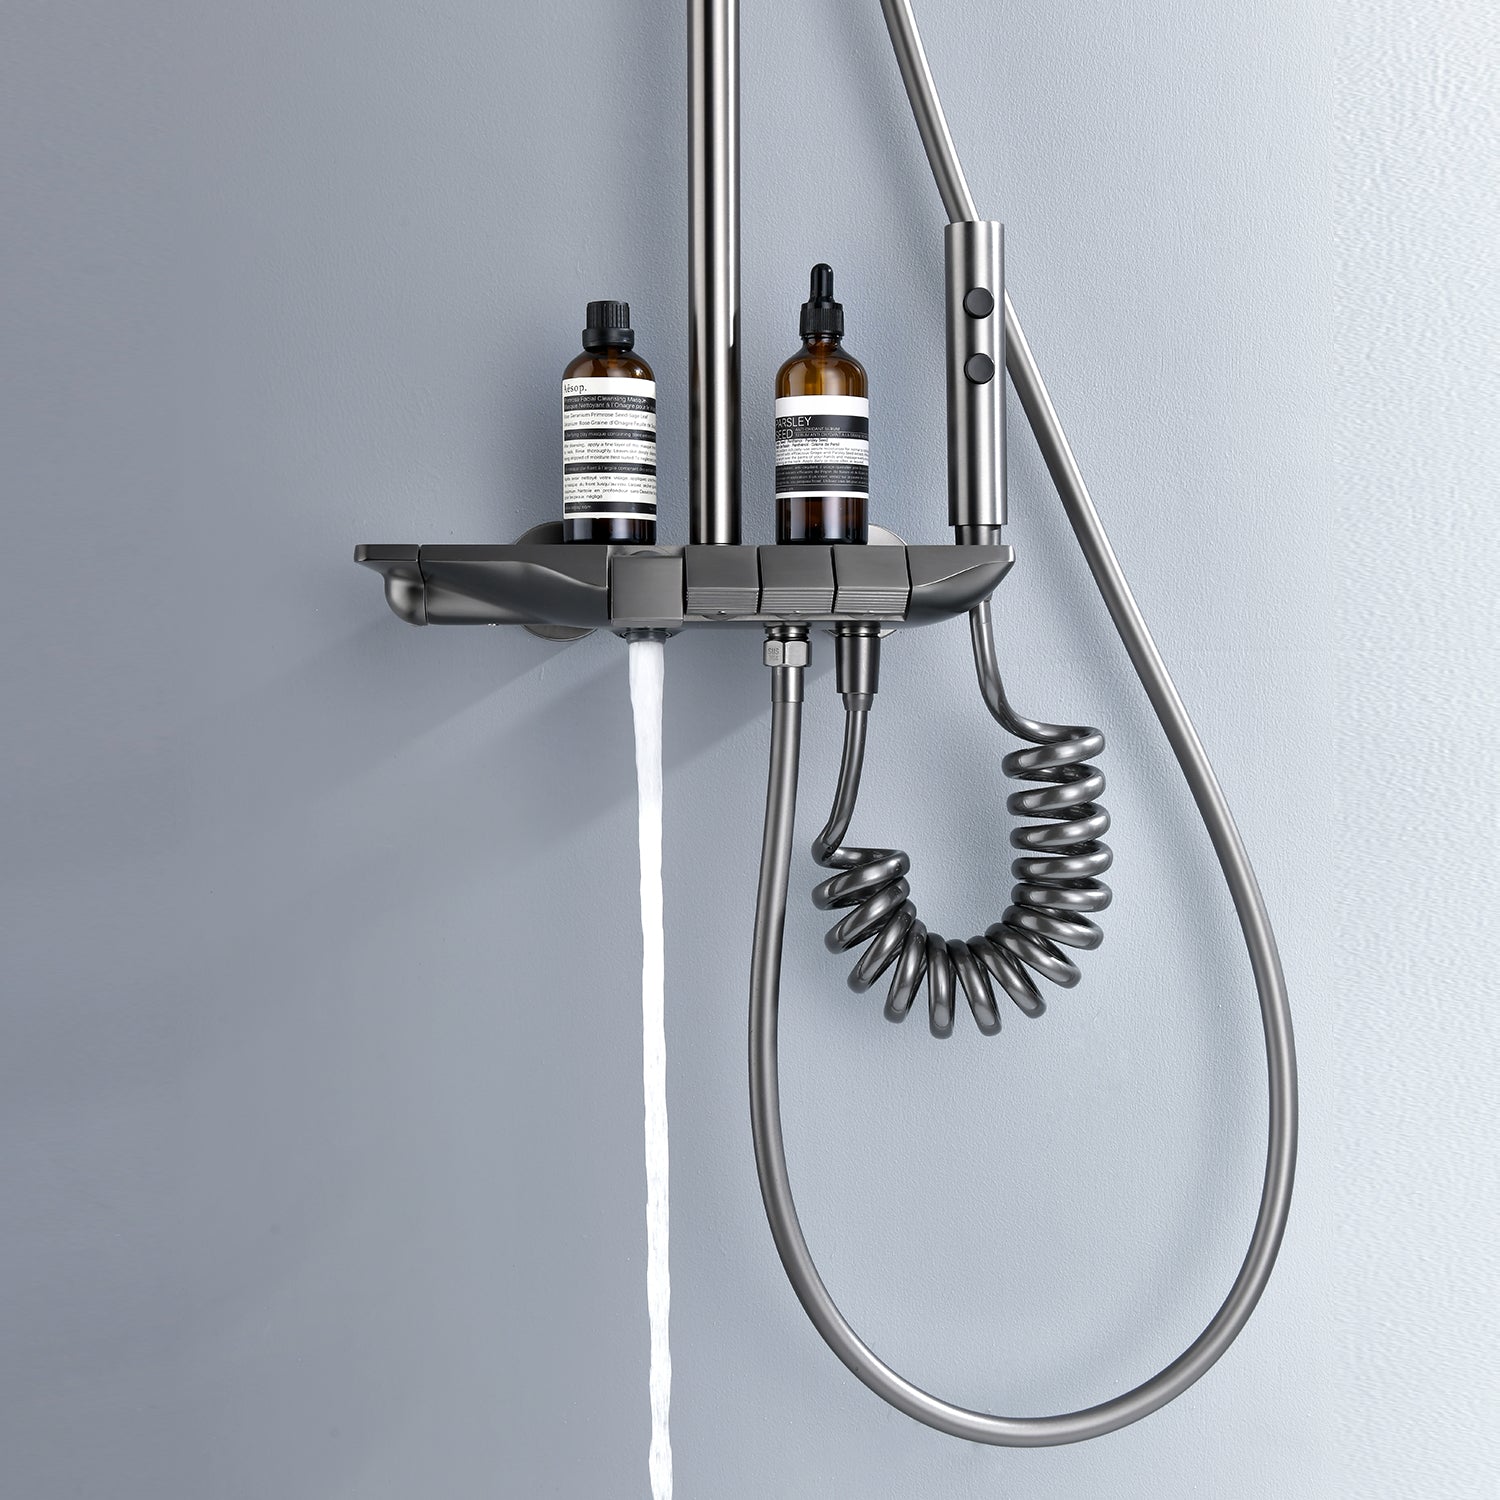 Sistema de ducha termostático Lefton con 4 botones independientes y 4 modos de salida de agua SS2201